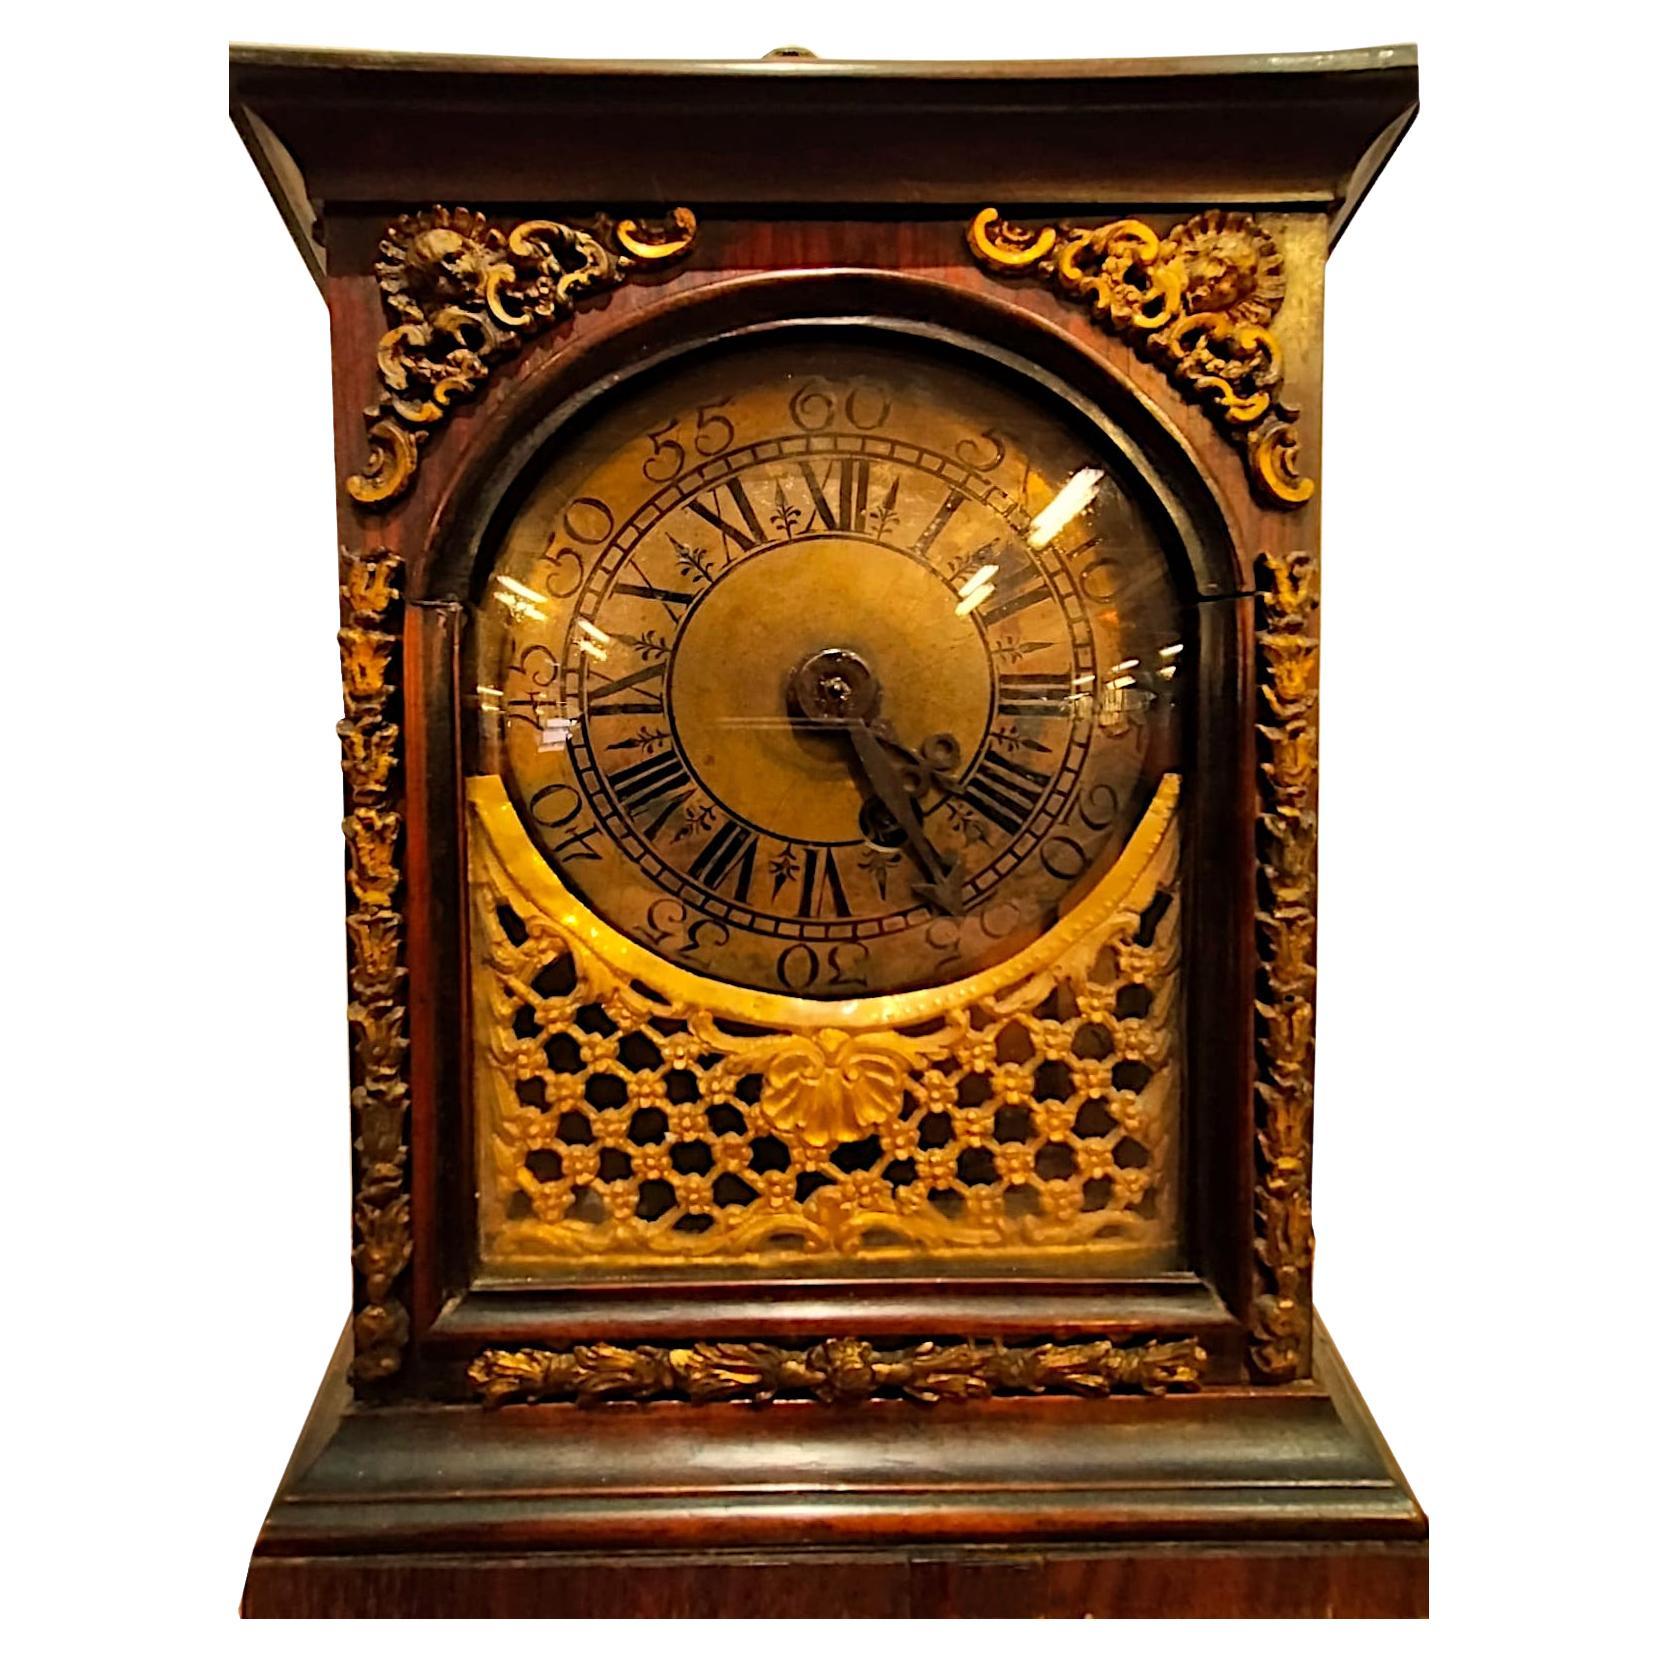 Horloge de table du début des années 1700,  bois de rose et bronzes dorés